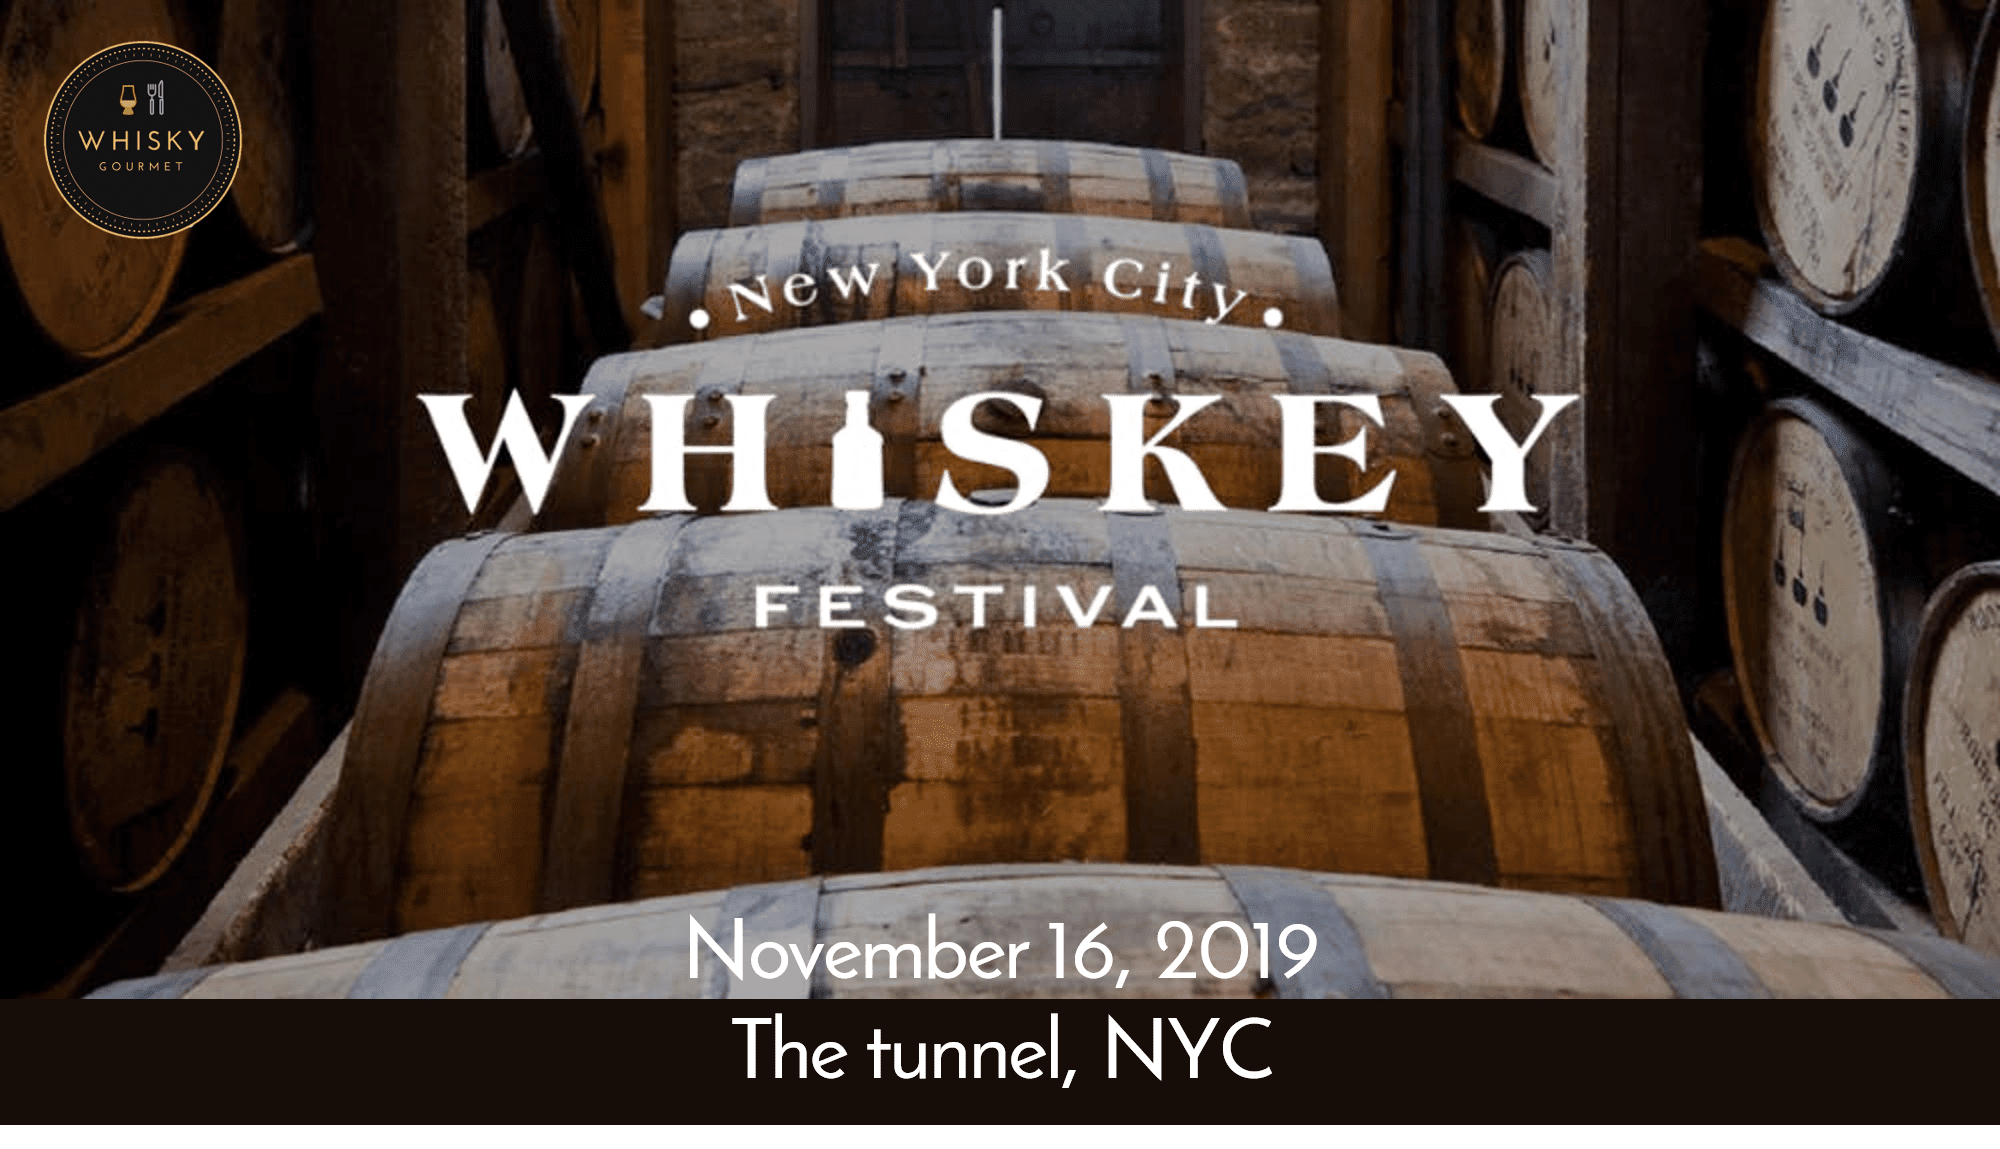 Whiskey Festival in New York City Nov 16, 2019 vibrant energy